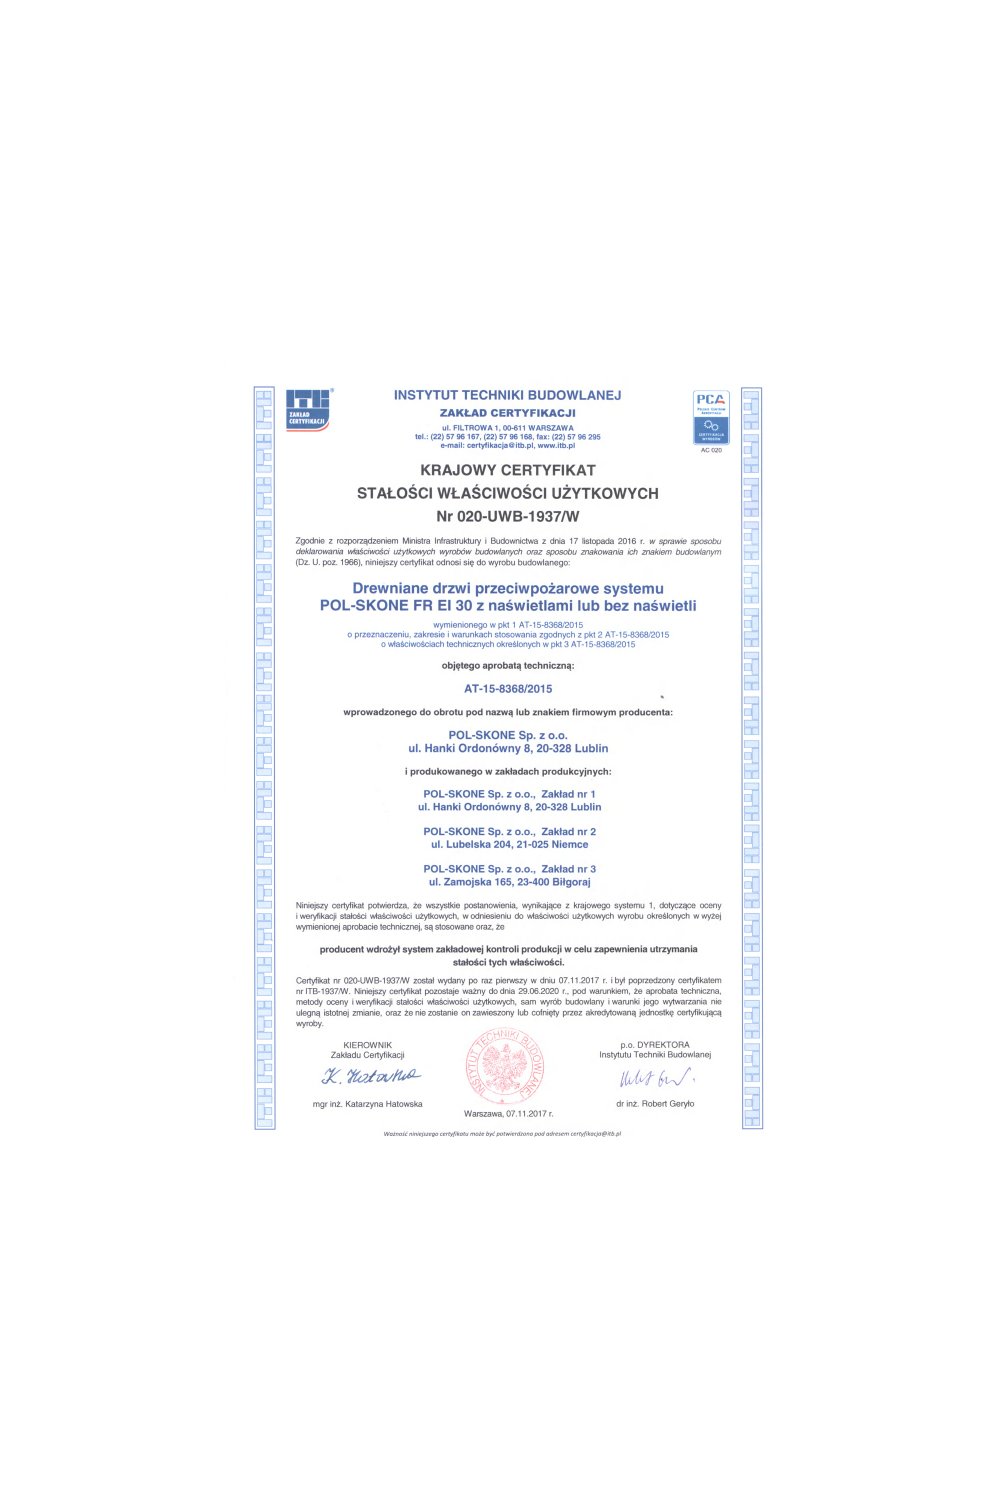 Krajowy certyfikat stałości właściwości użytkowych Nr 020-UWB-1937/W - zdjęcie